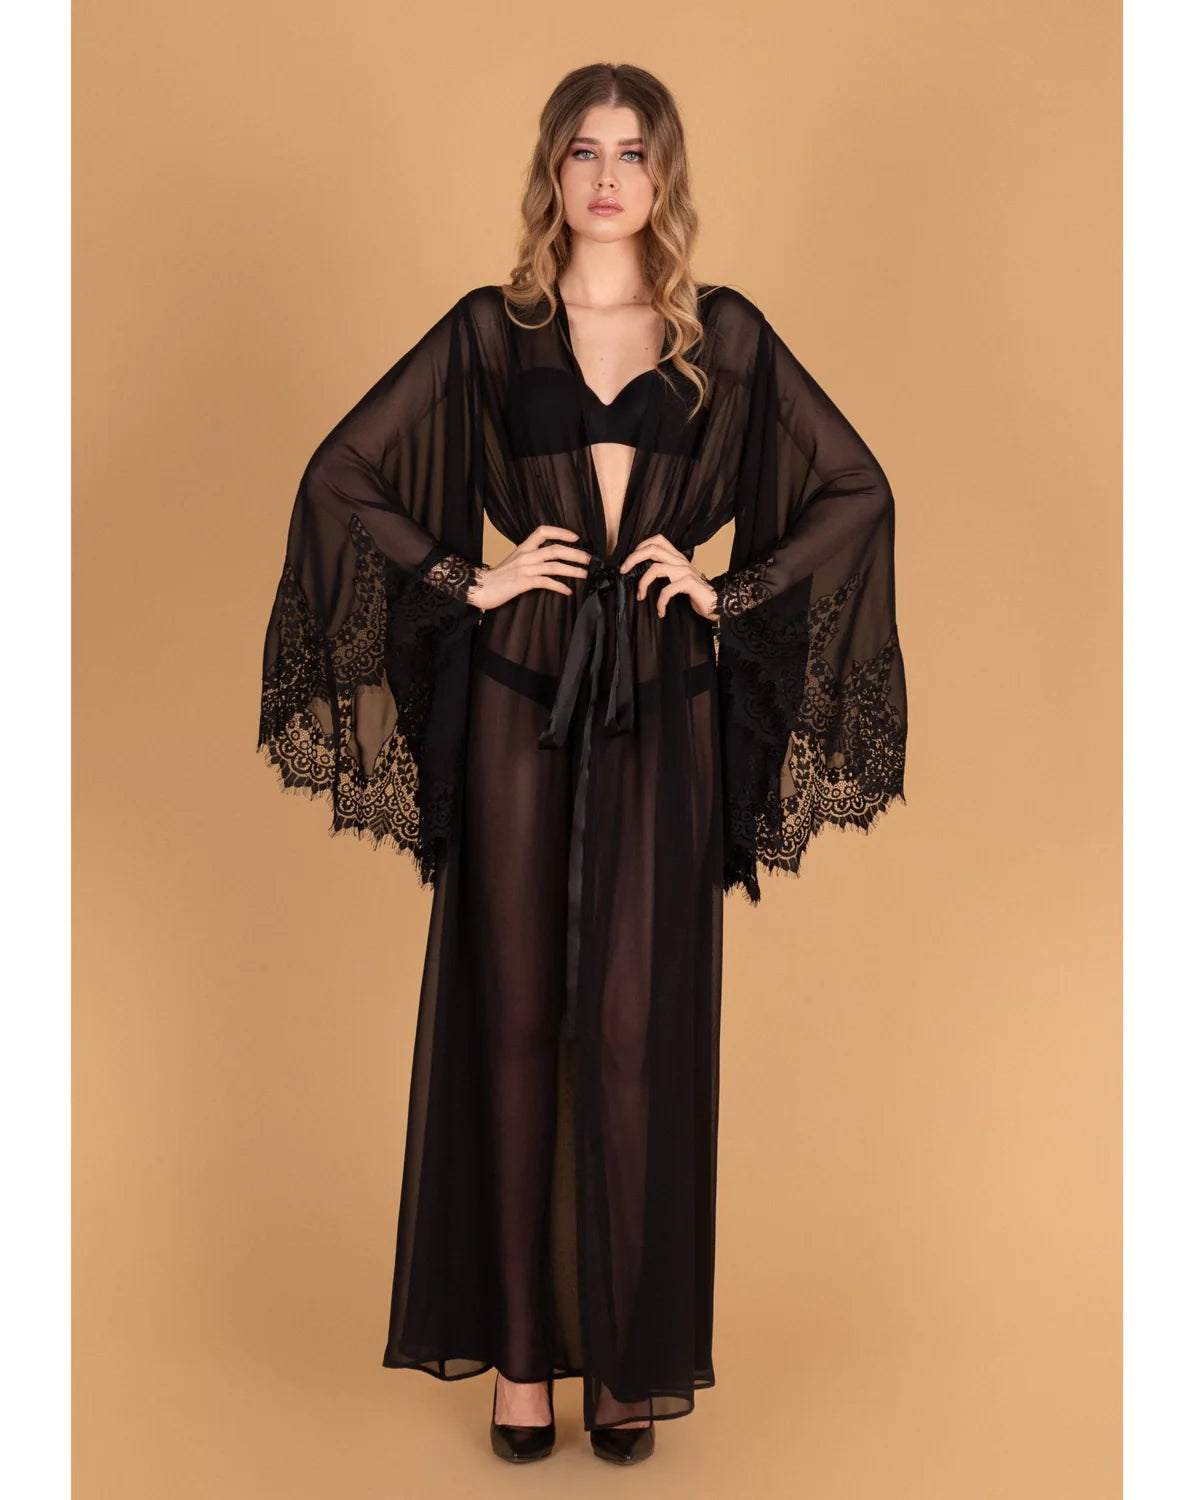 Lady Blacksleeves Sheer Robe in Black